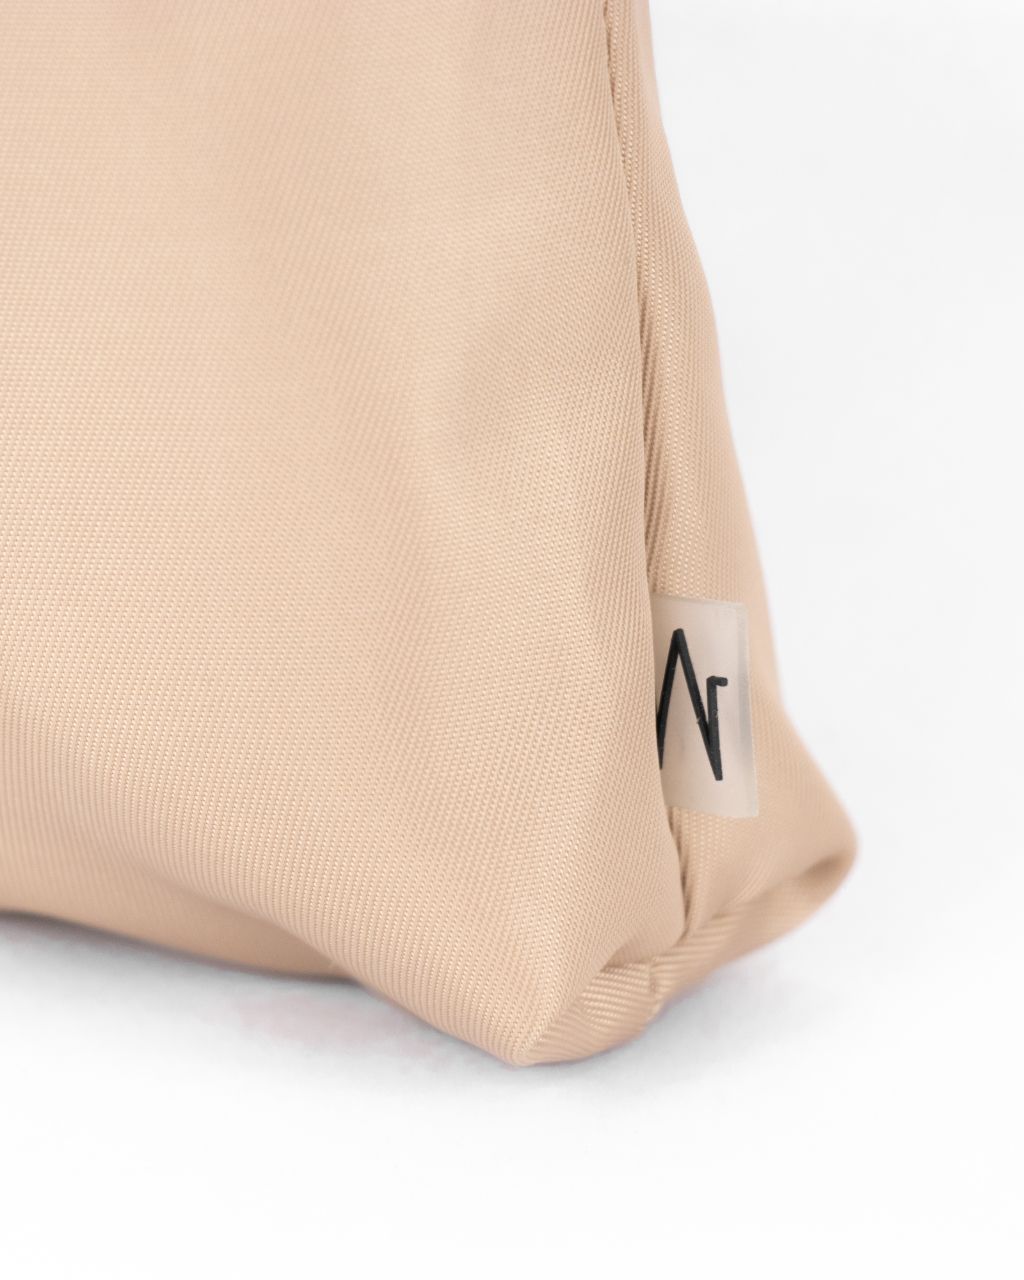 minimal workwear style  work pocket in khaki nylon logo close up